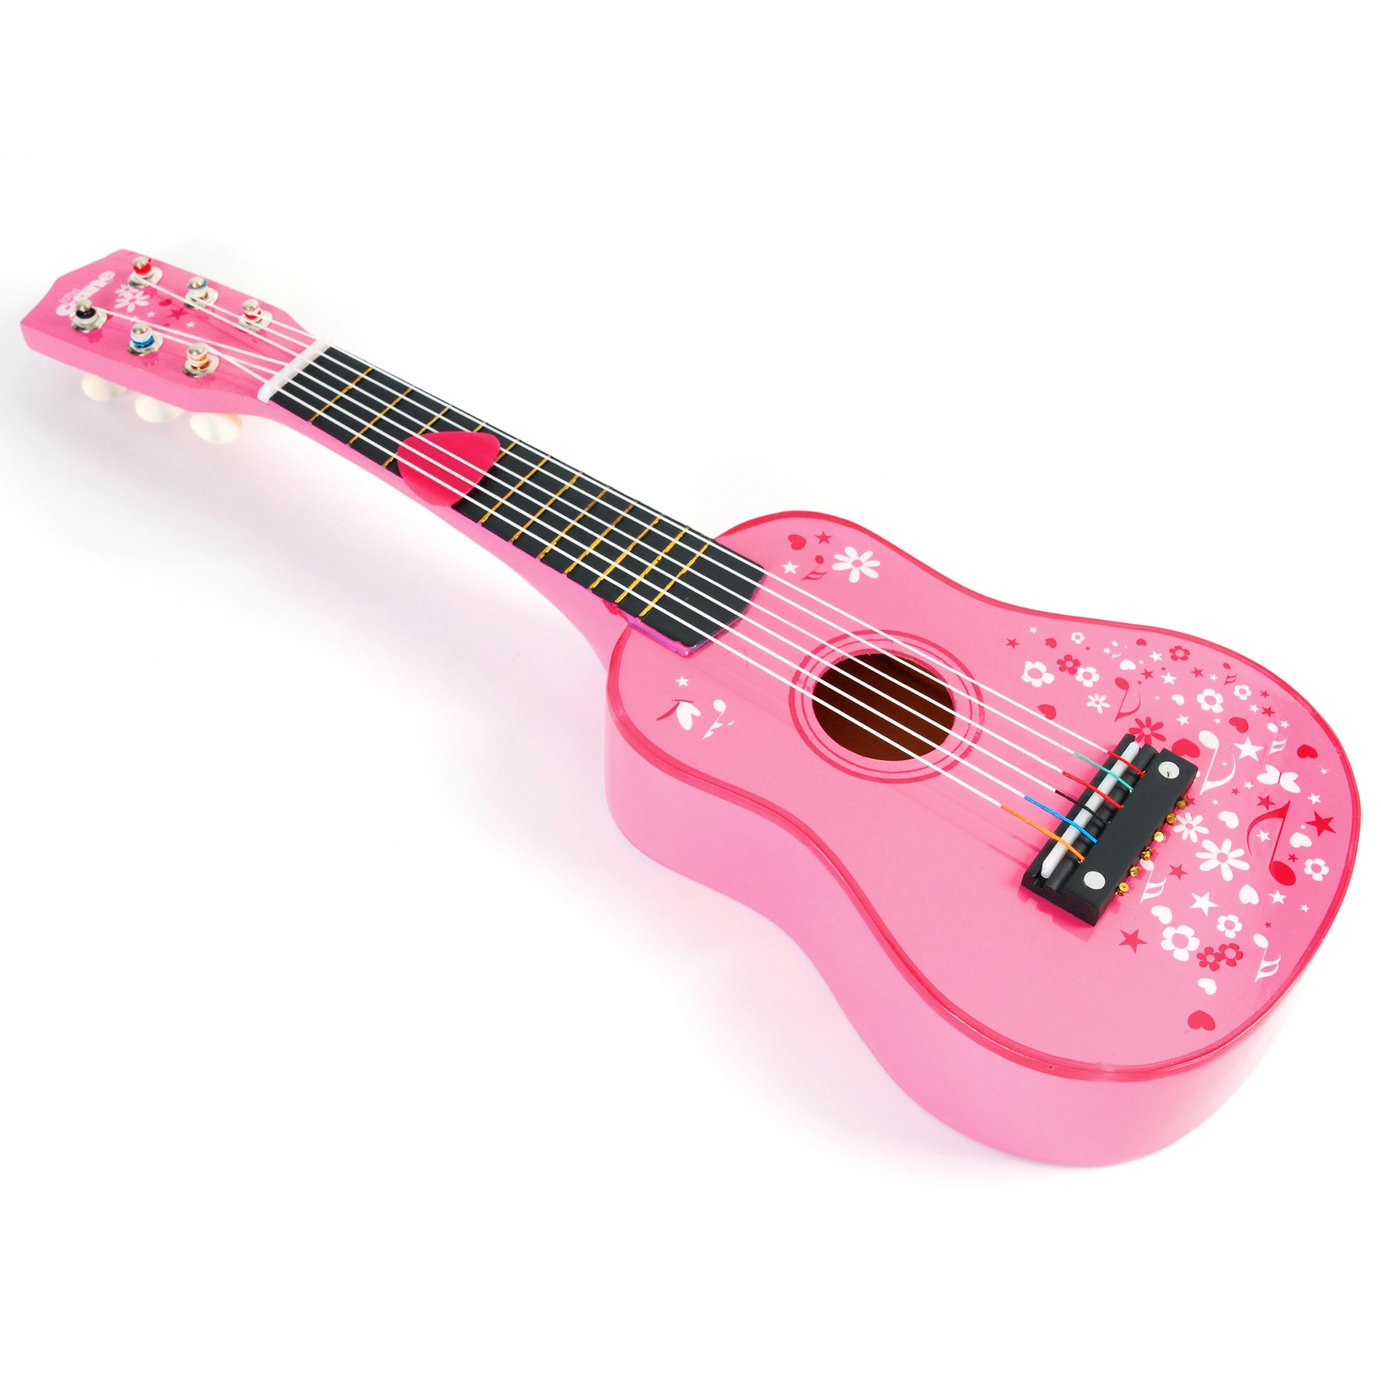 Tildo Pink Wooden Guitar Review